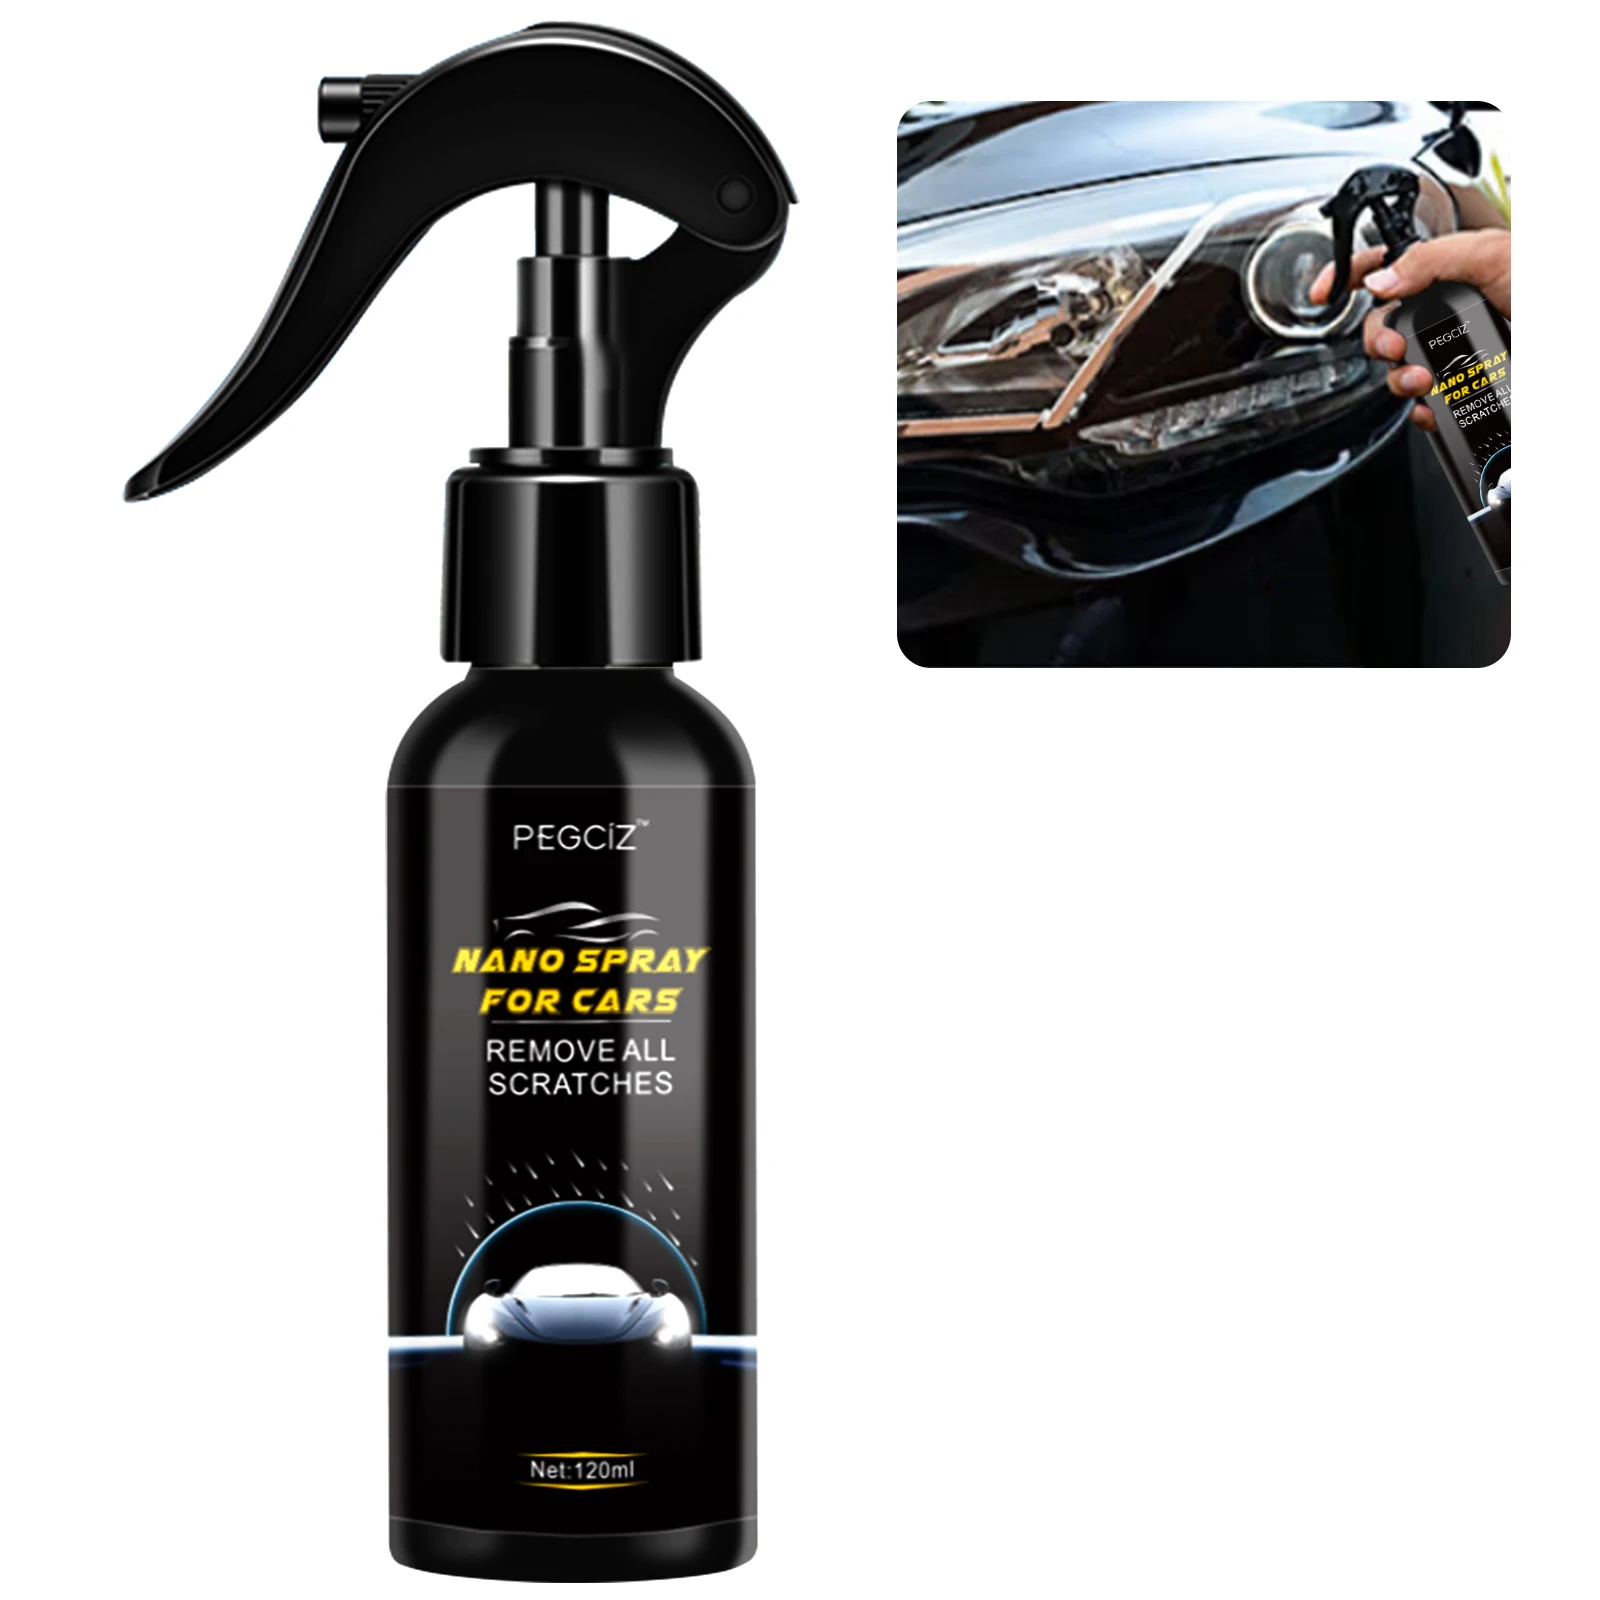 

PEGCiZ private label ceramic coating car surface nano sprayhigh protection quick ceramic car nano coating spray